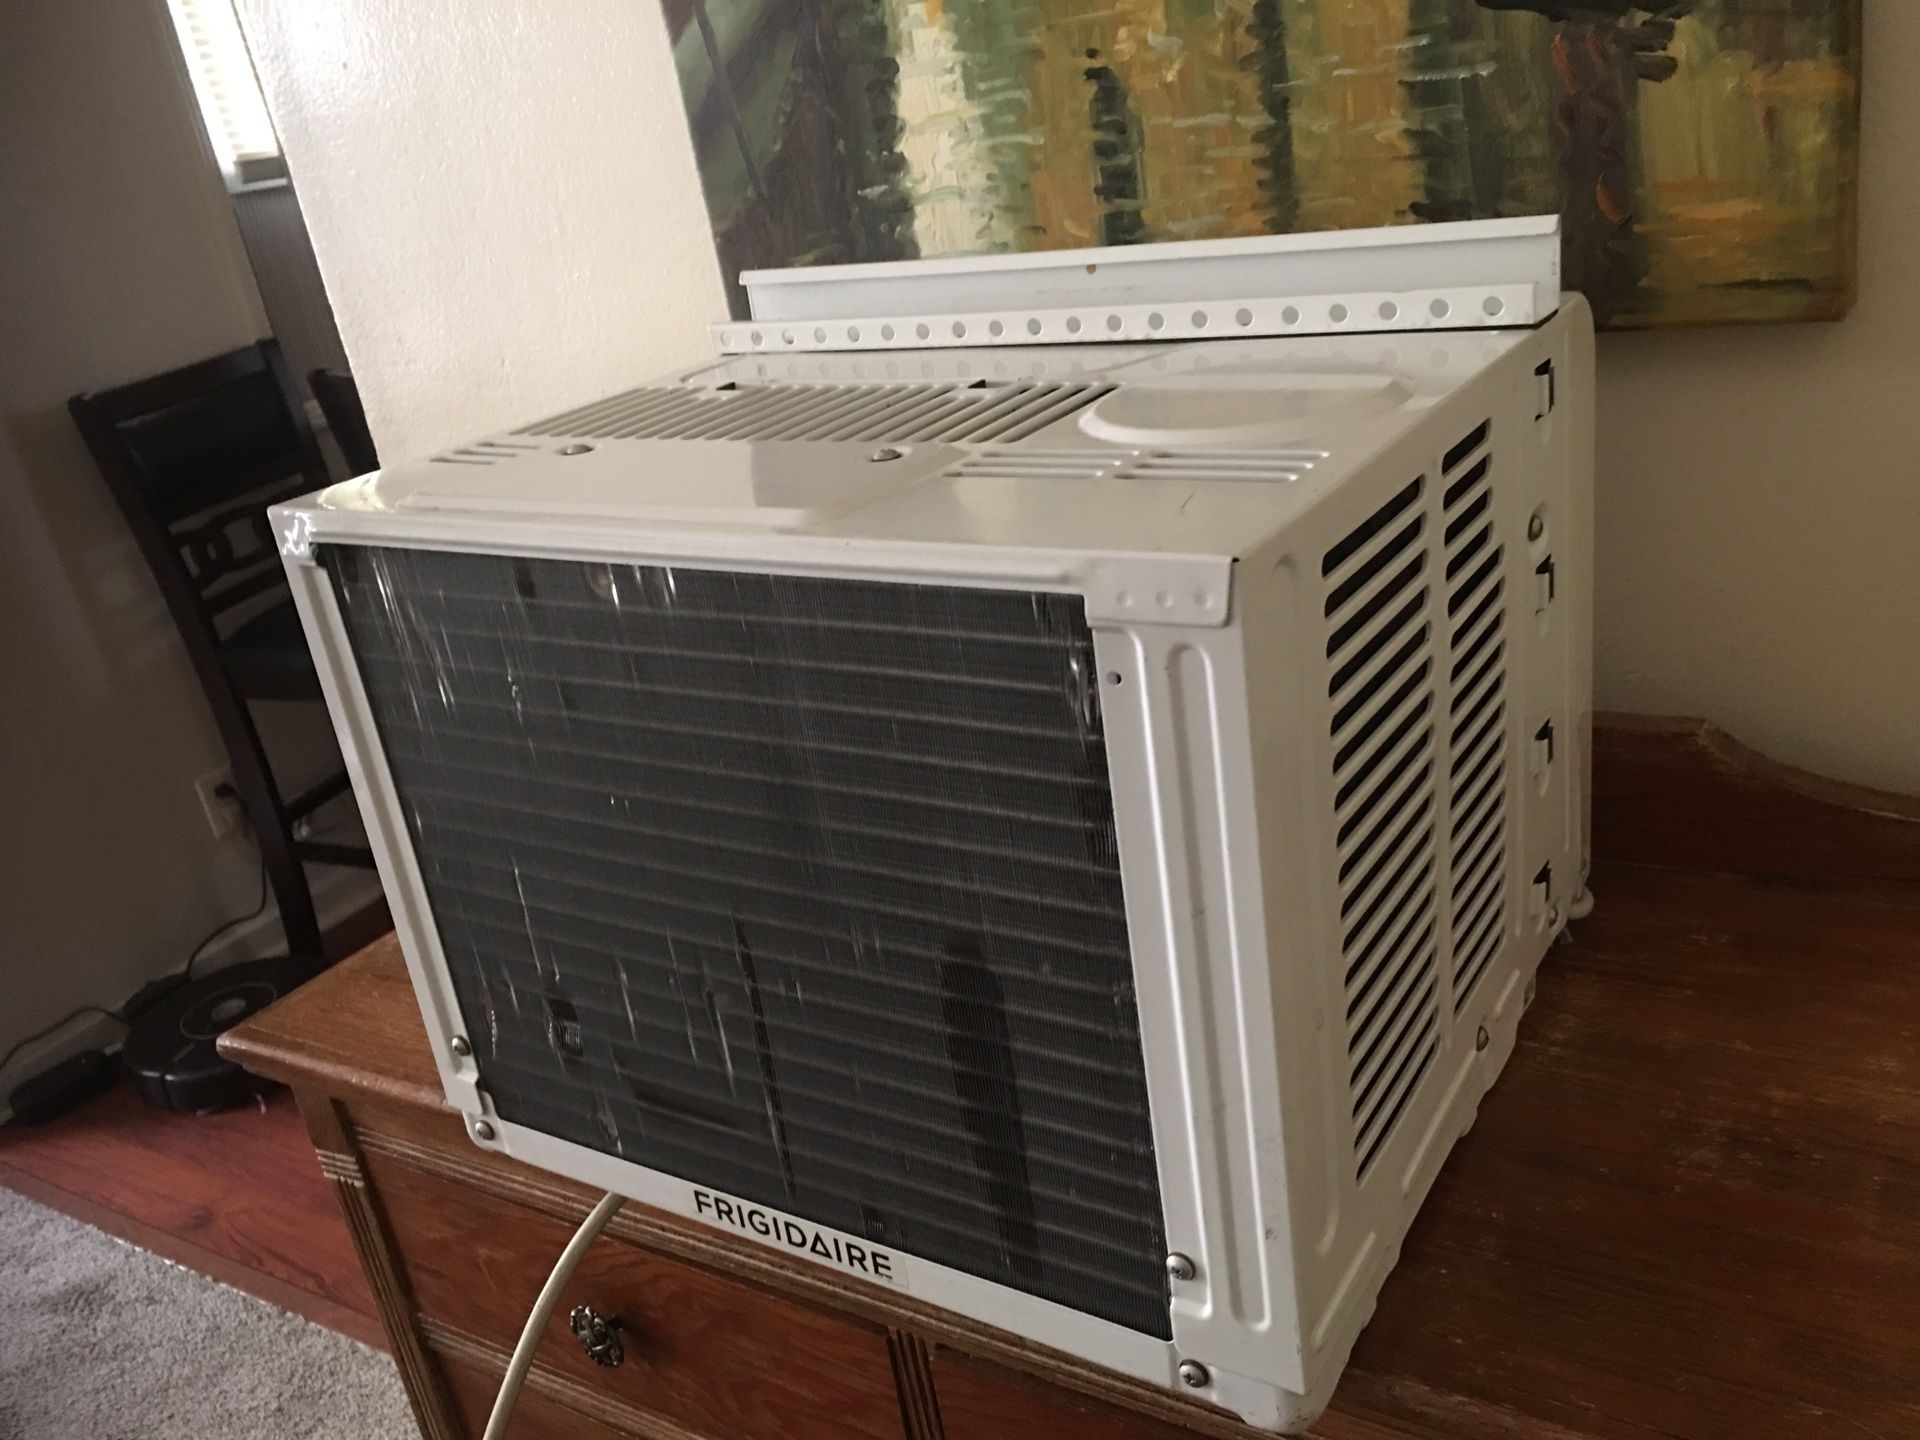 Fridgidaire Air conditioner